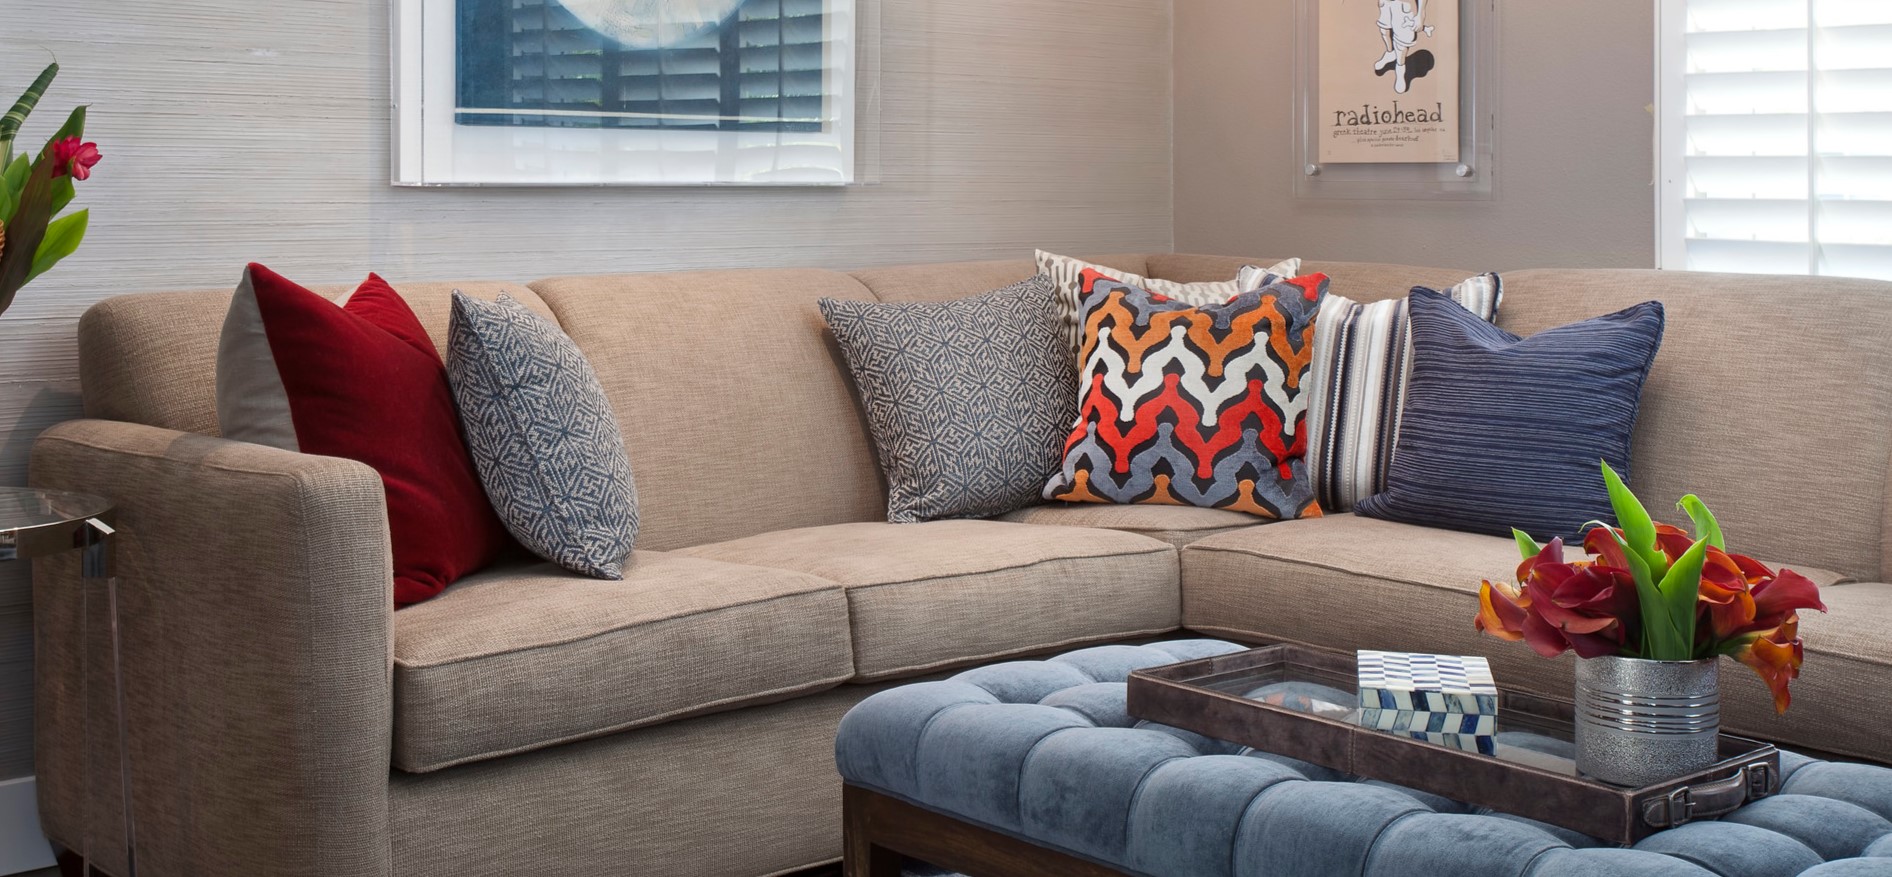 На бежевом диване будут стильно смотреться декоративные подушки с современным принтом